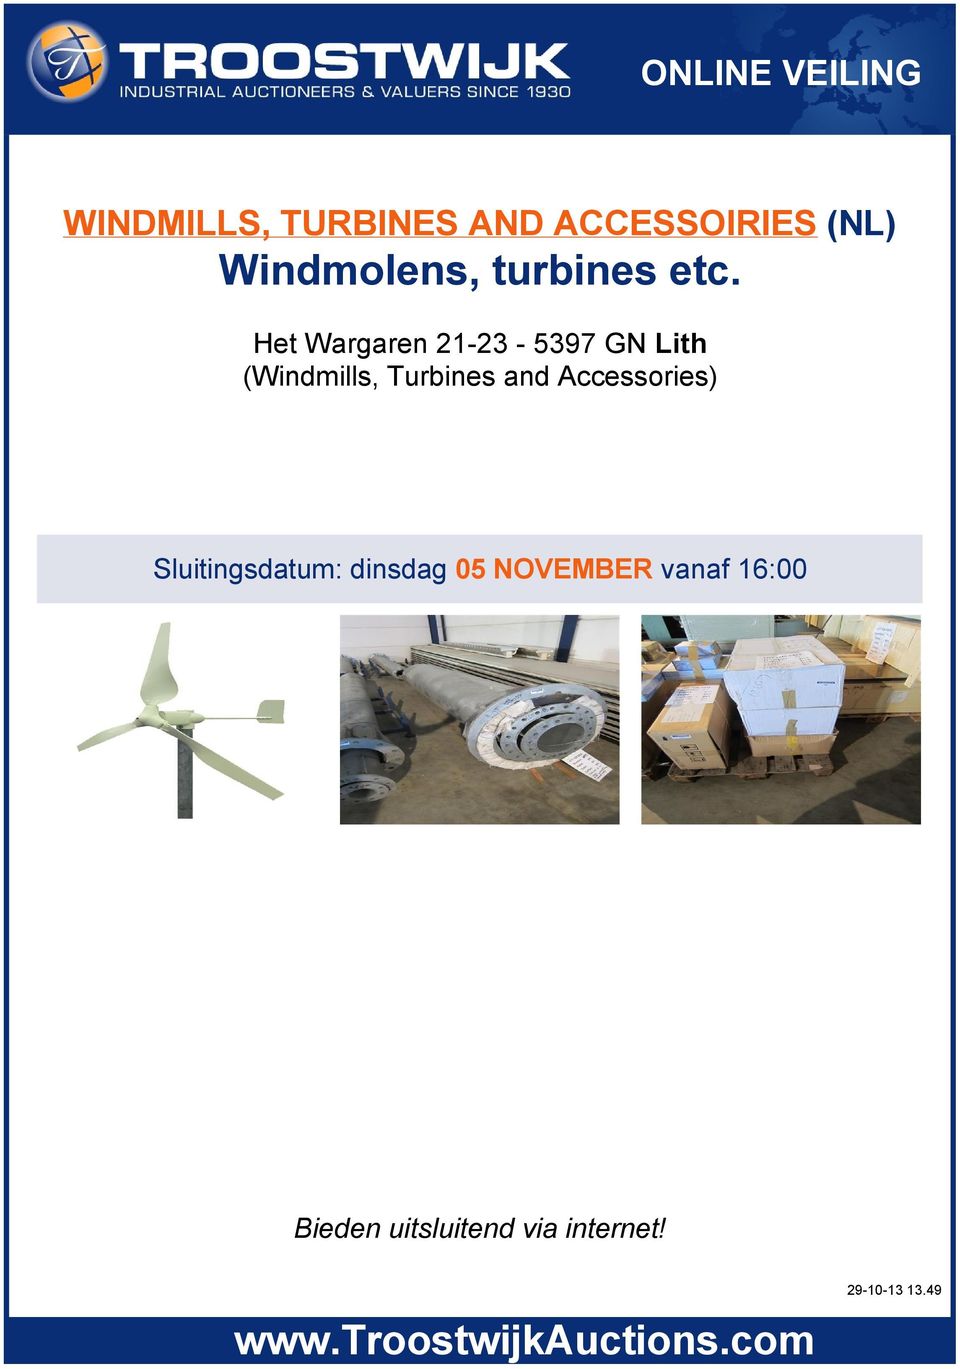 Het Wargaren 21 23 5397 GN Lith (Windmills, Turbines and